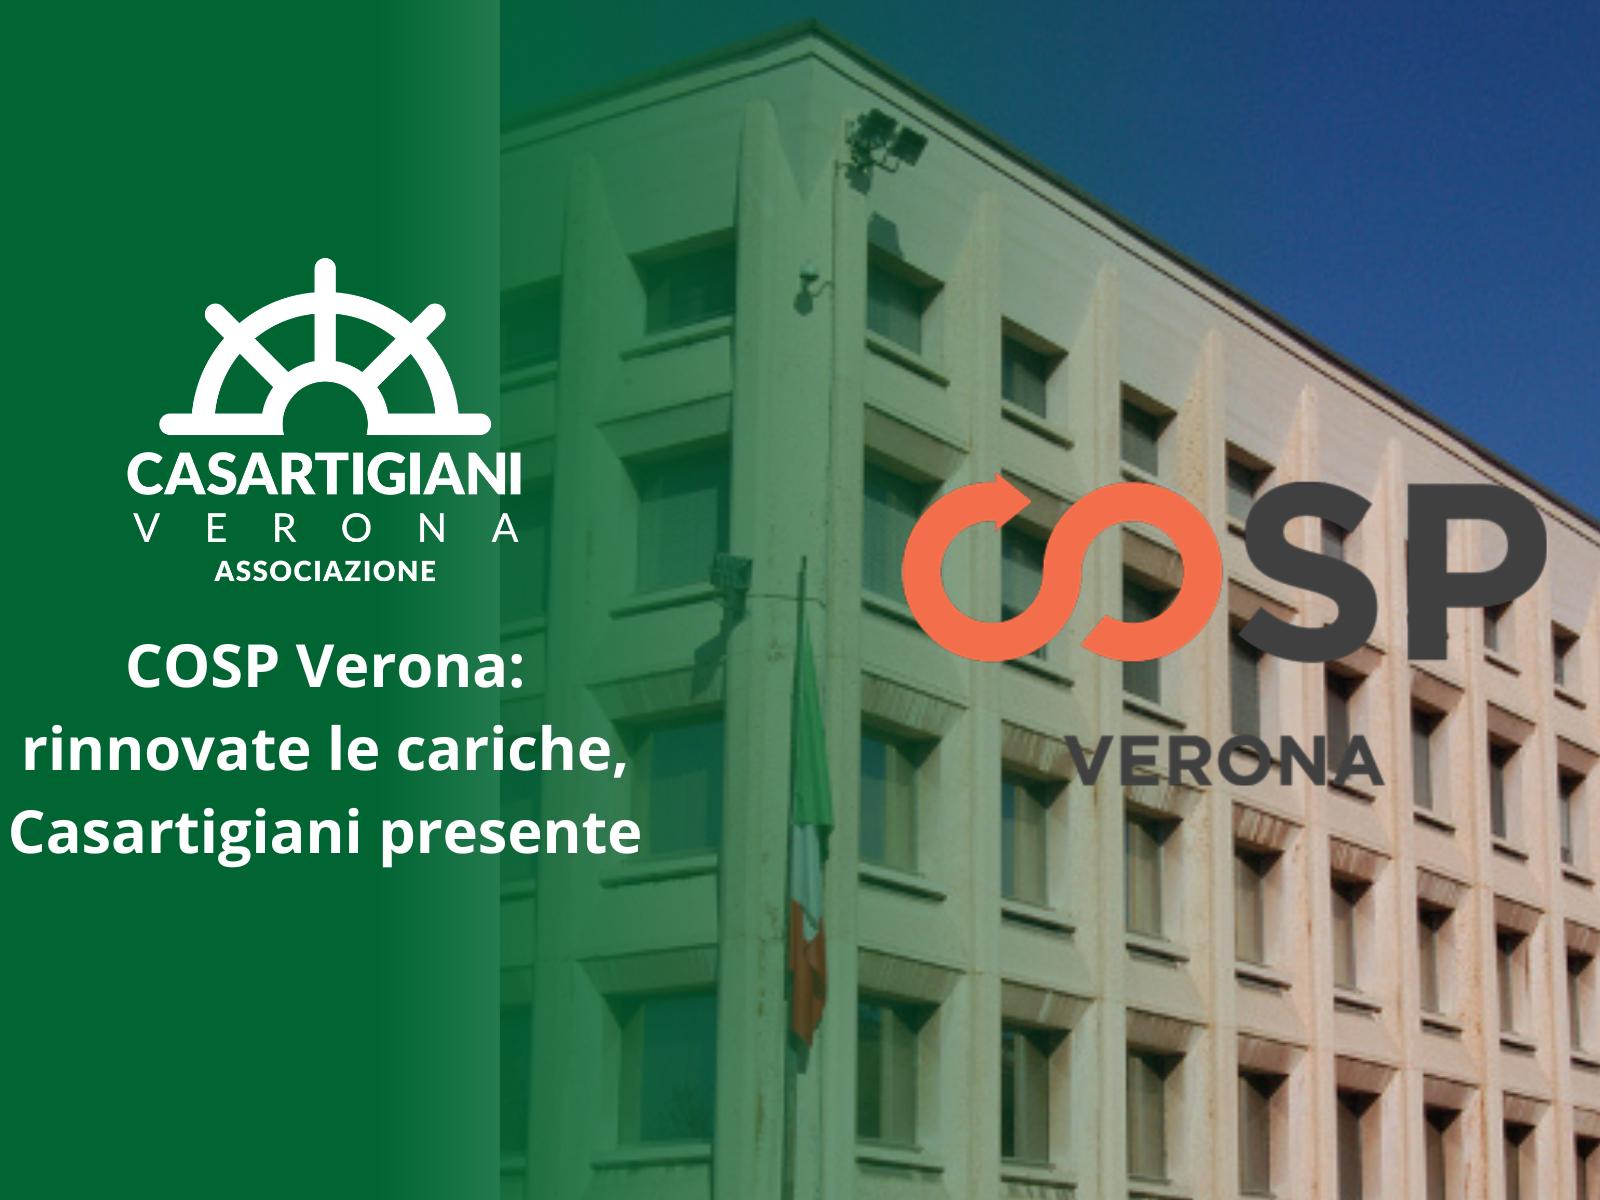 COSP Verona: rinnovate le cariche, Casartigiani presente